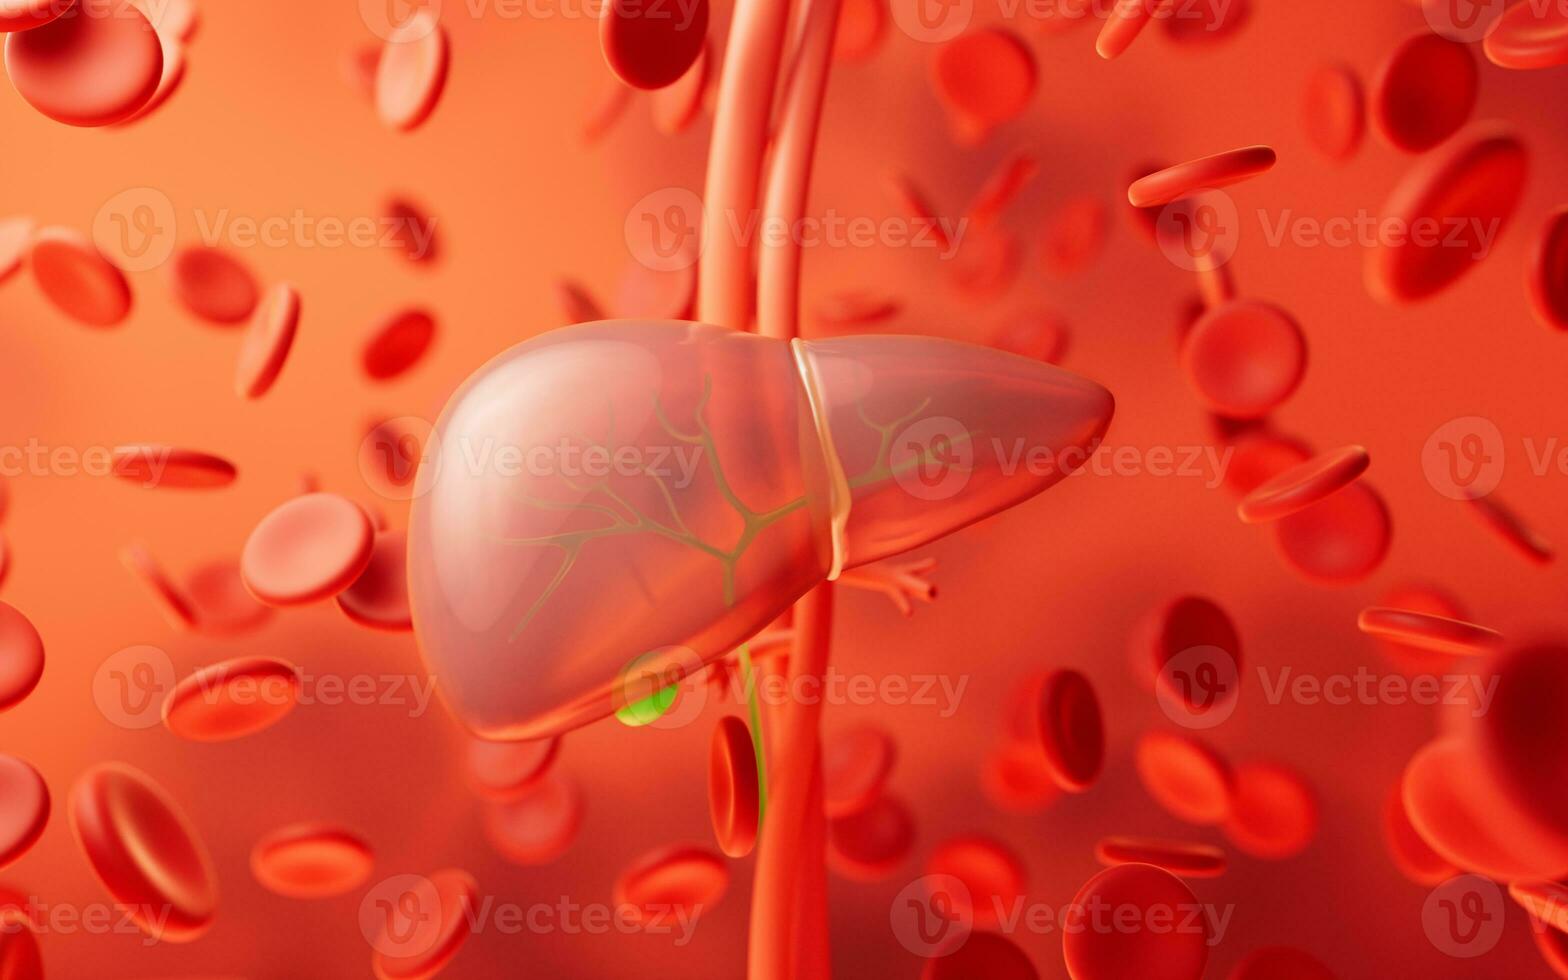 fígado órgão com saúde Cuidado conceito, 3d Renderização. foto